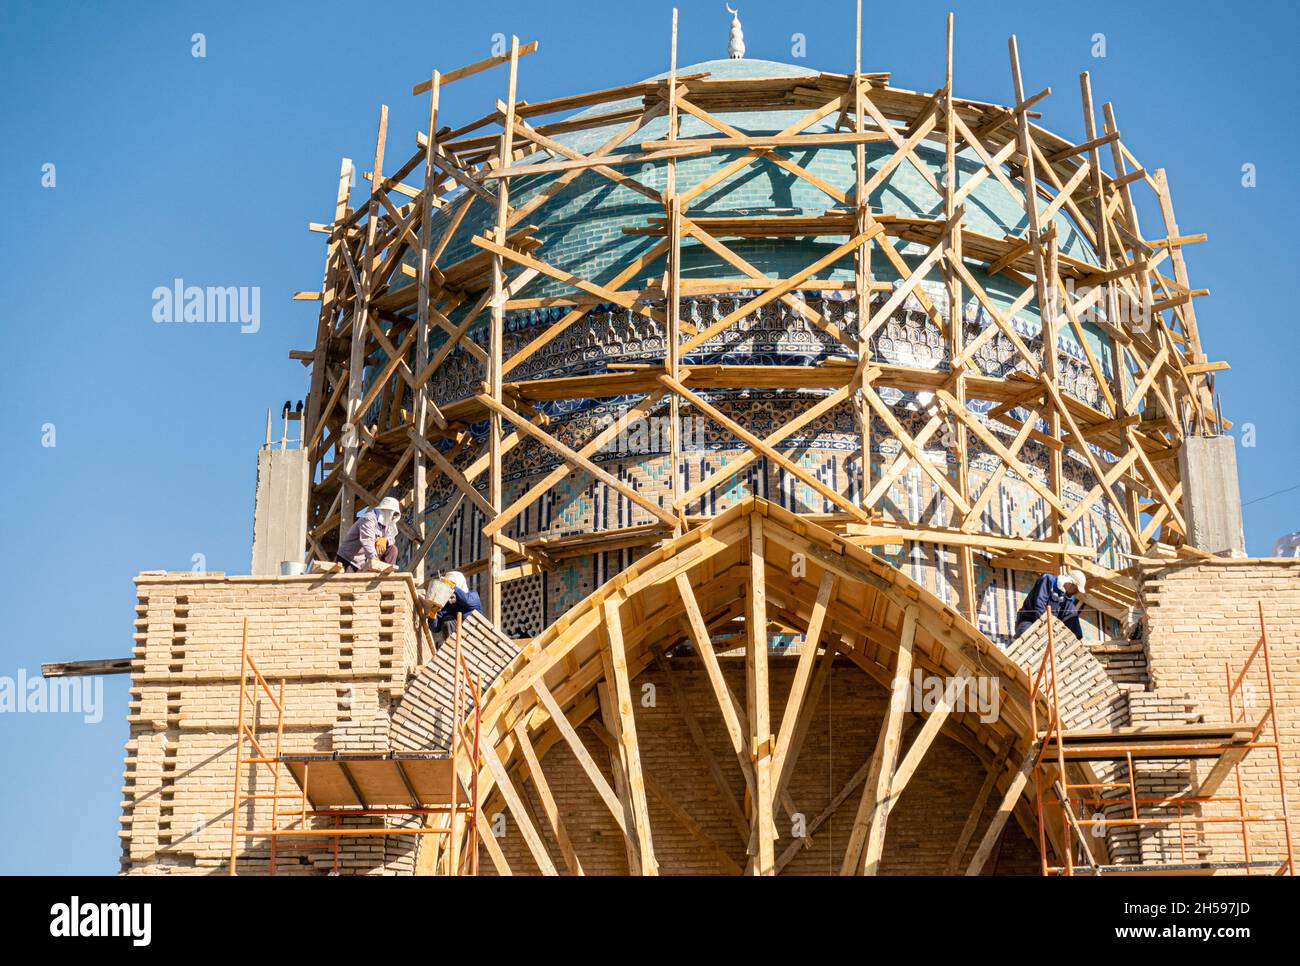 Lavori di ricostruzione sulla cupola del Mausoleo di Khoja Ahmed Yasawi, 14 ° secolo, principale attrazione turistica in Turkistan, Kazakhstan, Asia Centrale Foto Stock